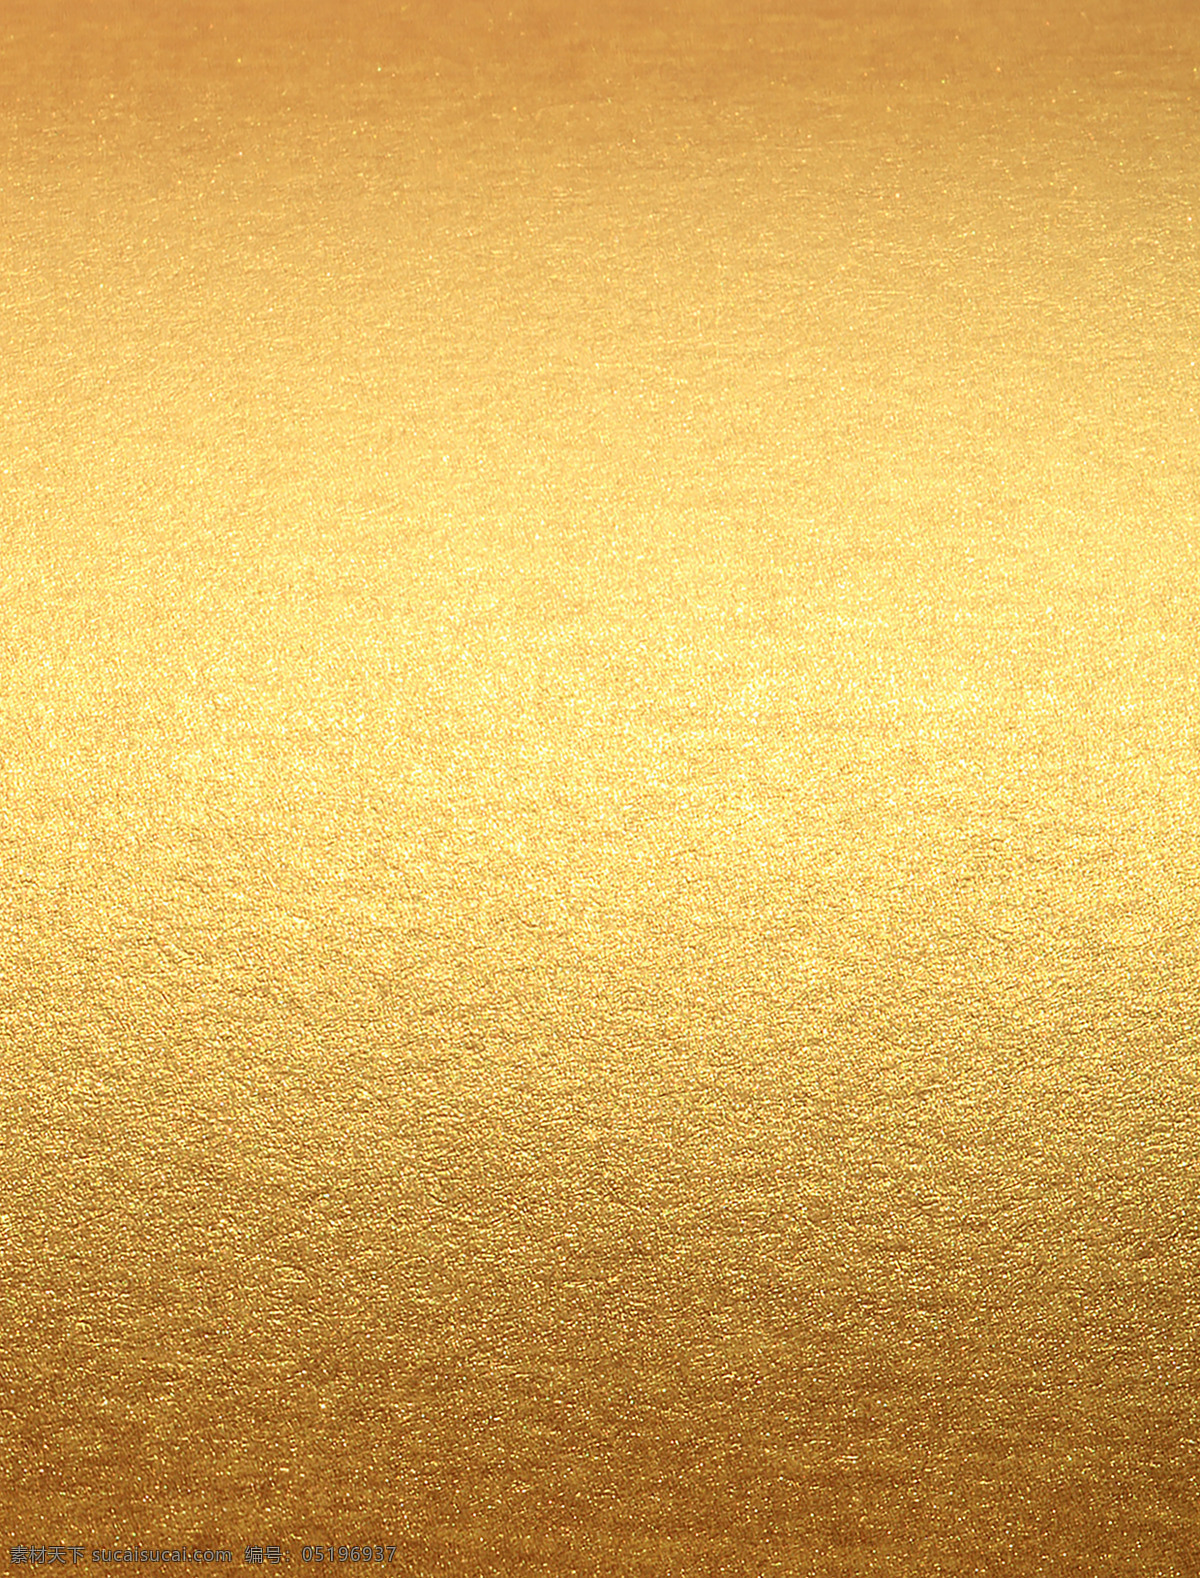 金色 材质 金属 质感 高清 底纹 纹理 辉煌 富丽堂皇 大图